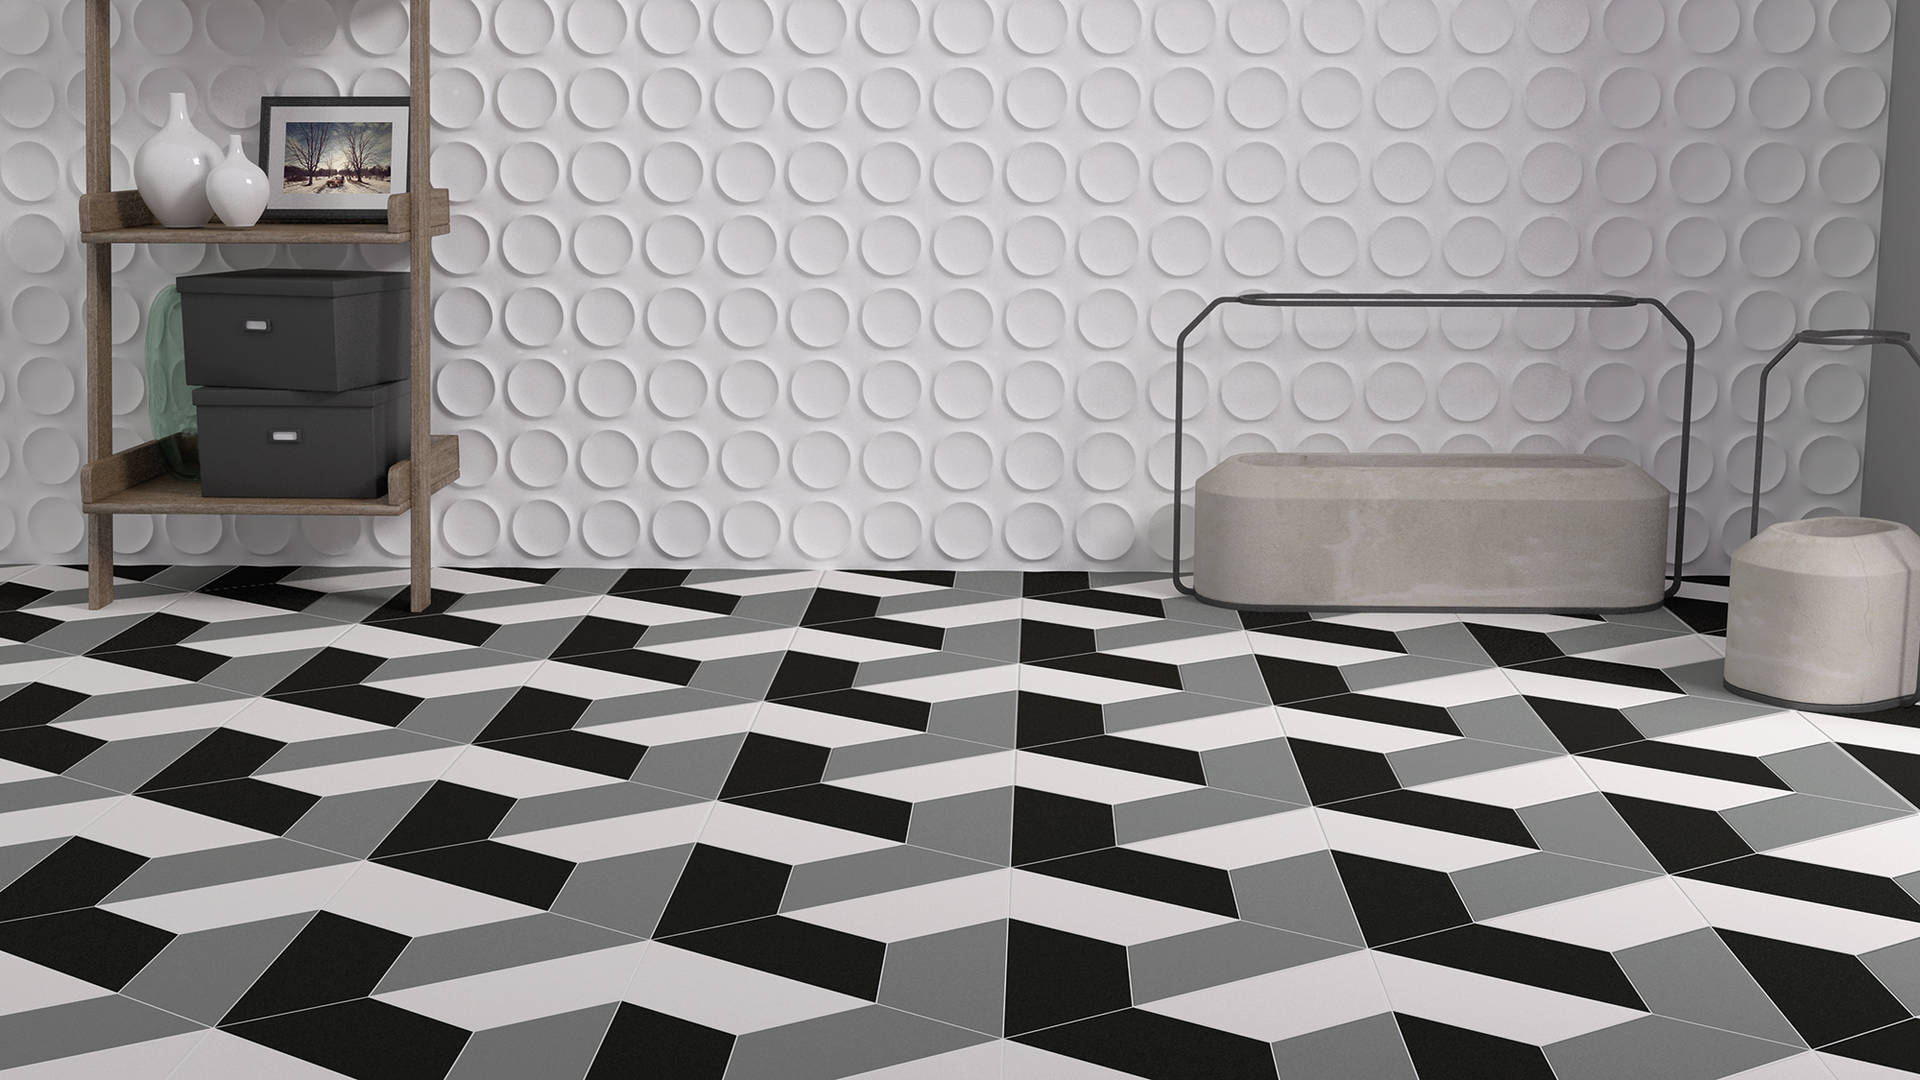 Monochrome 3D Steps Floor Tiles Wallpaper